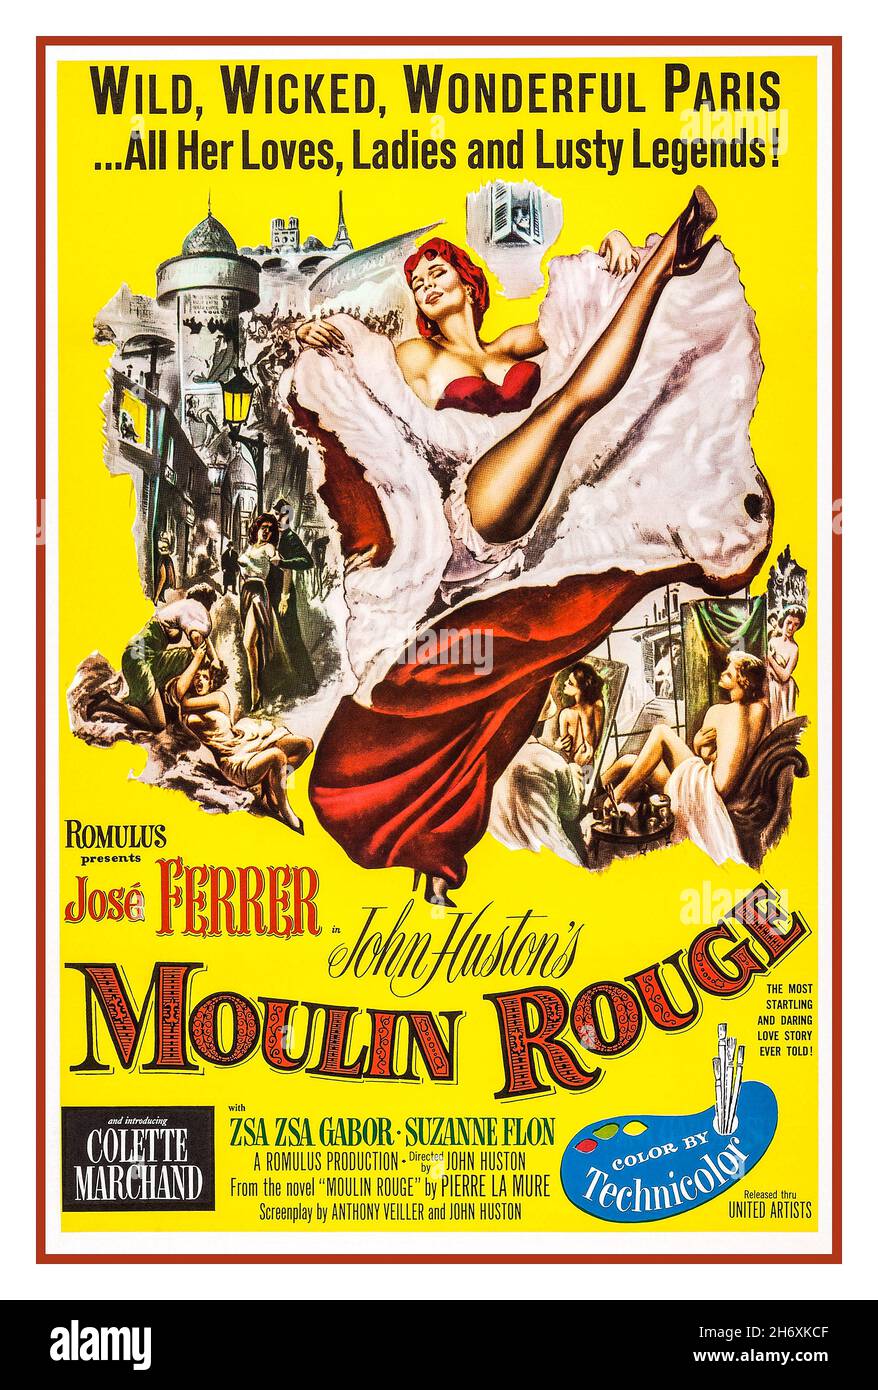 Moulin Rouge 1950s Vintage Film Filmposter ist ein britischer Drama-Film von John Huston aus dem Jahr 1952, der von John und James Woolf für ihre Romulus Films Company produziert und von United Artists veröffentlicht wurde. Der Film wird Ende des 19th. Jahrhunderts in Paris gedreht und folgt dem Künstler Henri de Toulouse-Lautrec in der böhmischen Subkultur der Stadt im Moulin Rouge. Das Drehbuch ist von Huston, basierend auf dem Roman von Pierre La Mure aus dem Jahr 1950. Die Kinematographie wurde von Oswald Morris gemacht. Dieser Film wurde 14th beim Internationalen Filmfestival in Venedig gezeigt, wo er den Silbernen Löwen gewann. Stockfoto